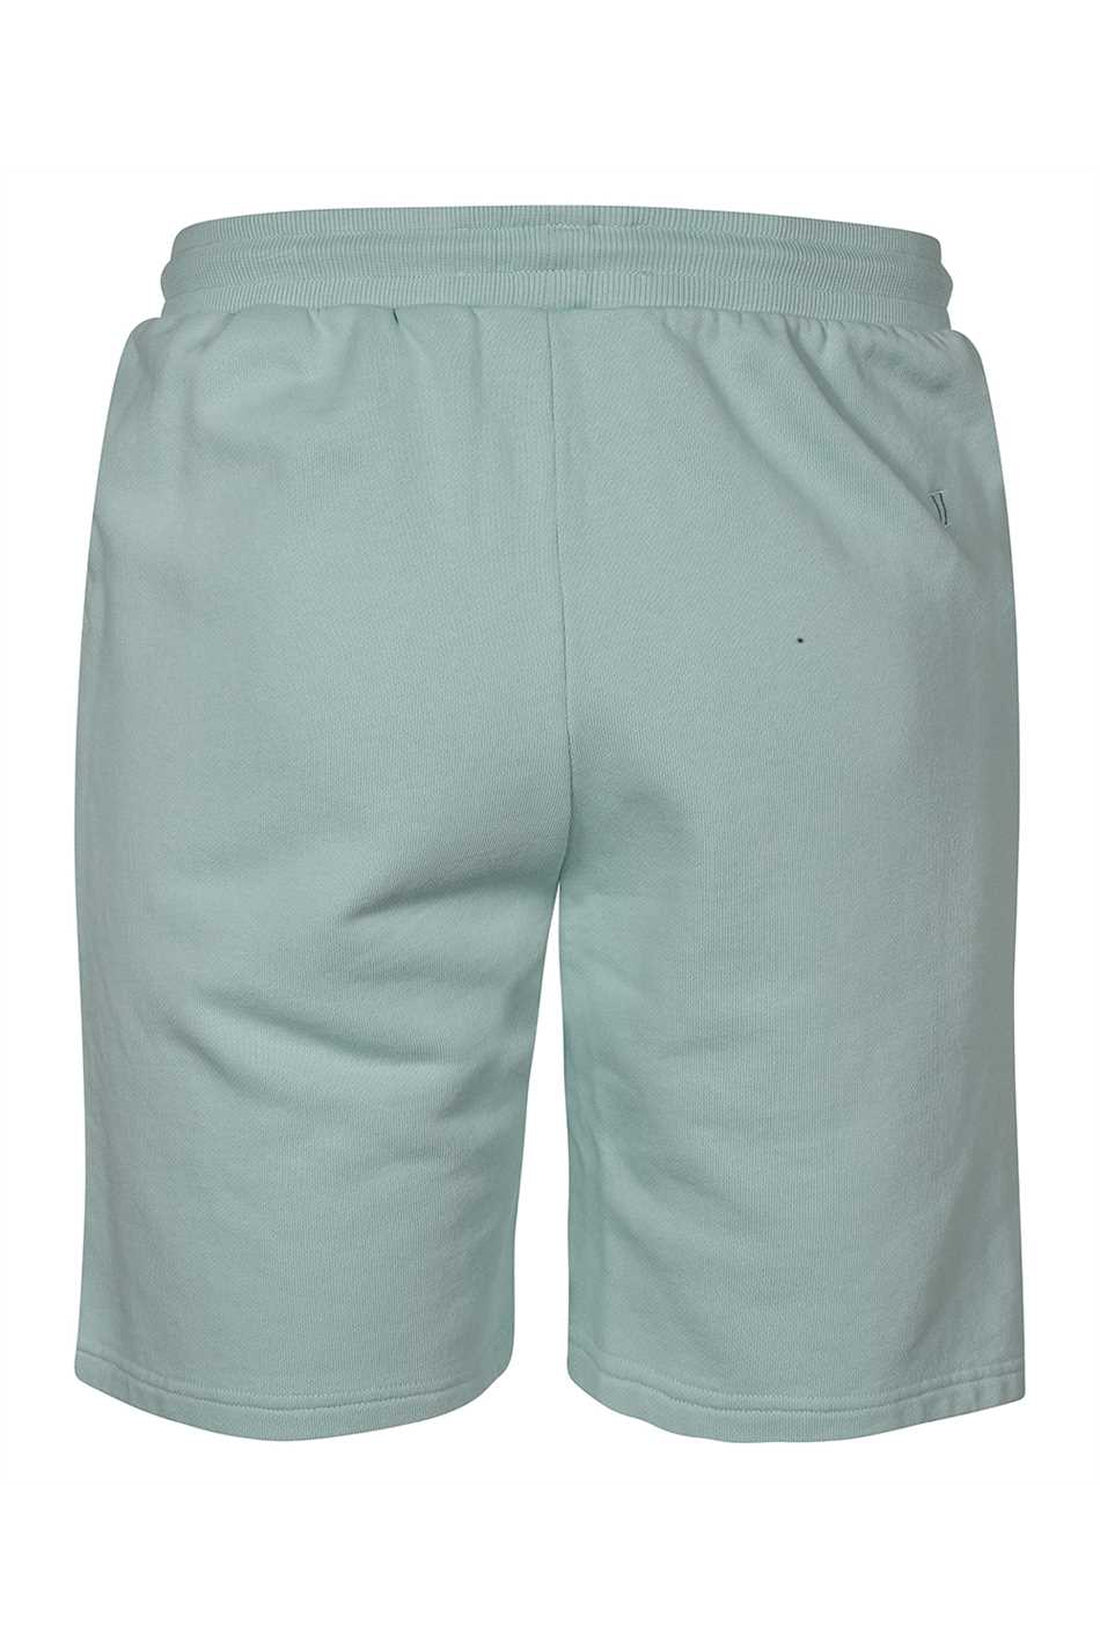 Les Deux-OUTLET-SALE-Lens cotton bermuda shorts-ARCHIVIST